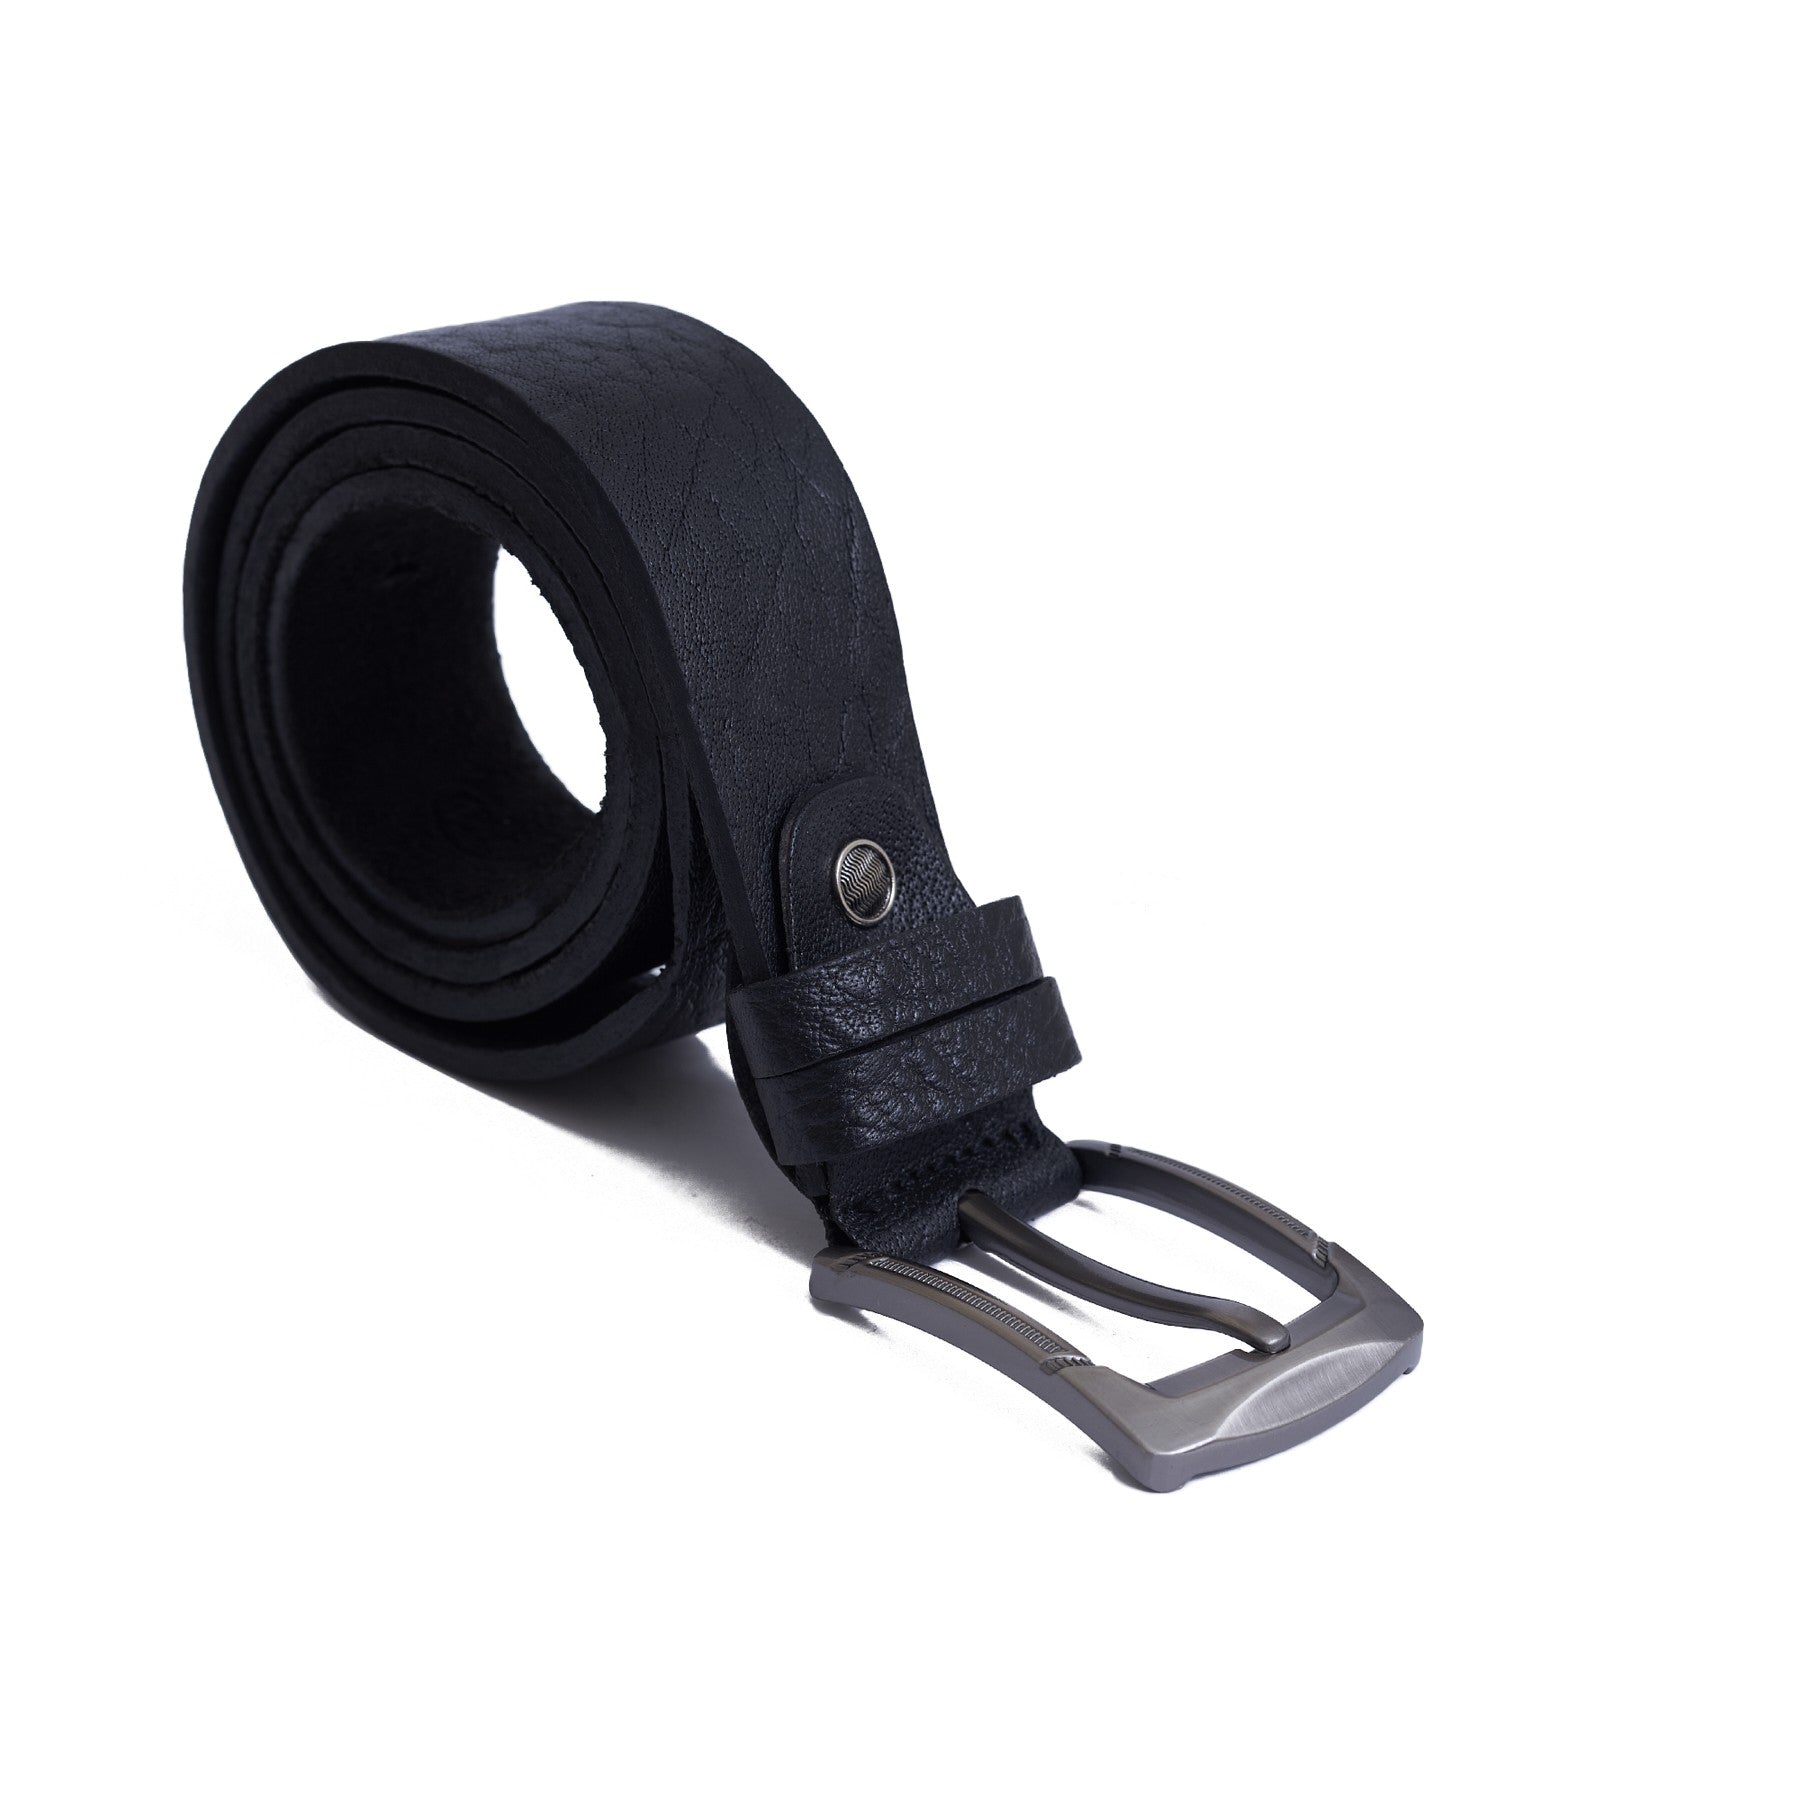 4 CM Super genuine leather Belt - Super Lux - Black Color Model B9001